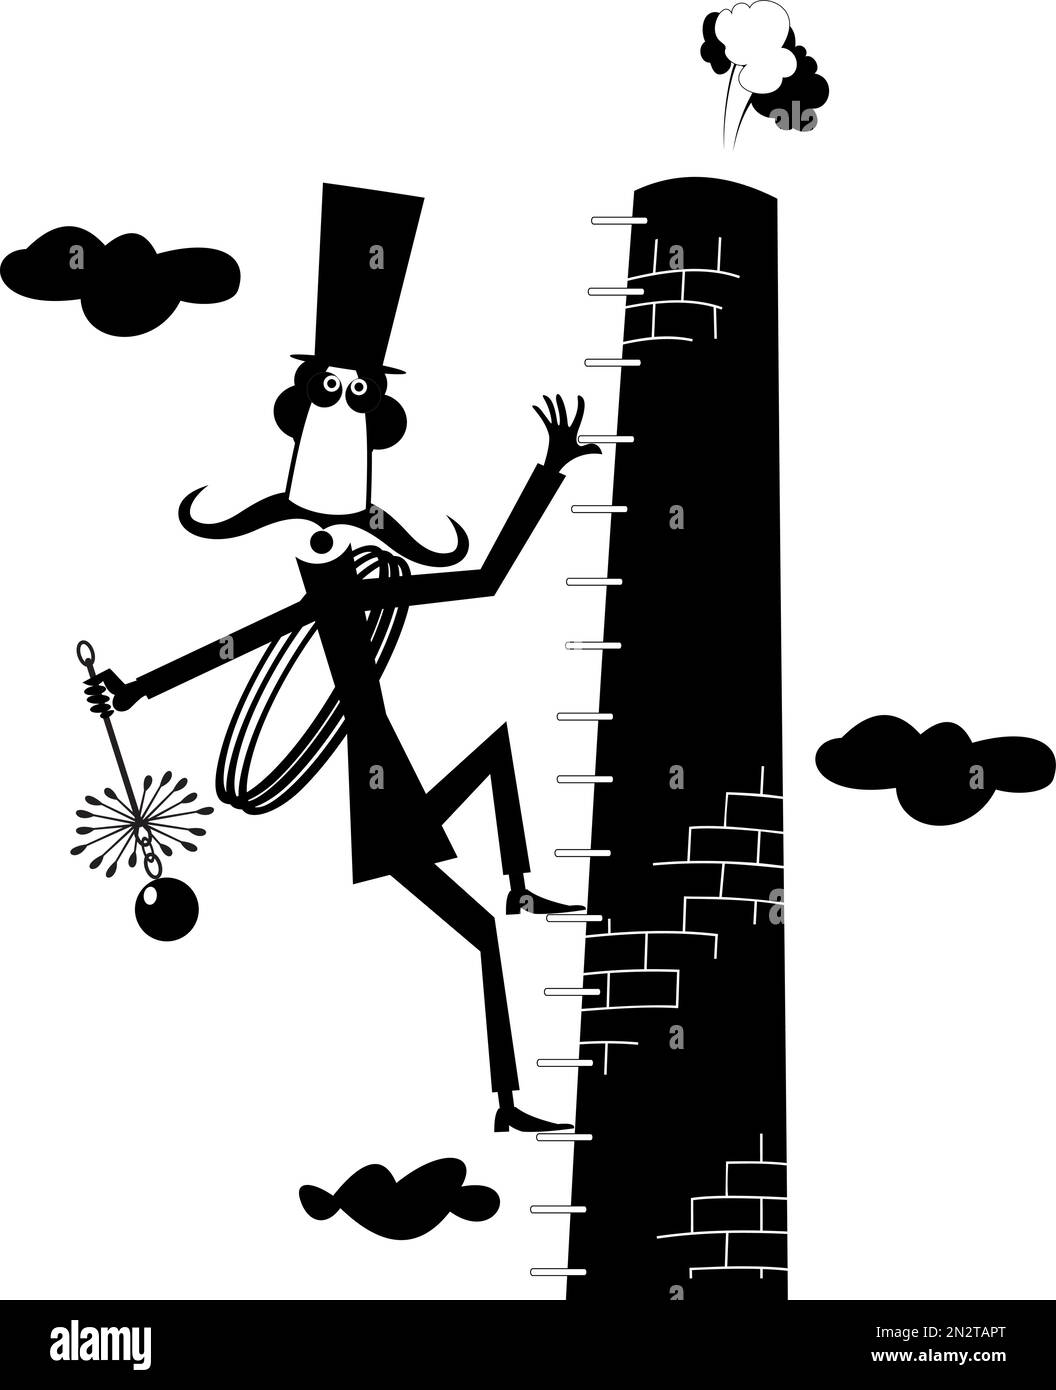 Der Schnurrbart-Kaminkehrer im Hut mit dem Seil und der Kaminbürste klettert auf das Ofenrohr, schwarz auf weiß Stock Vektor